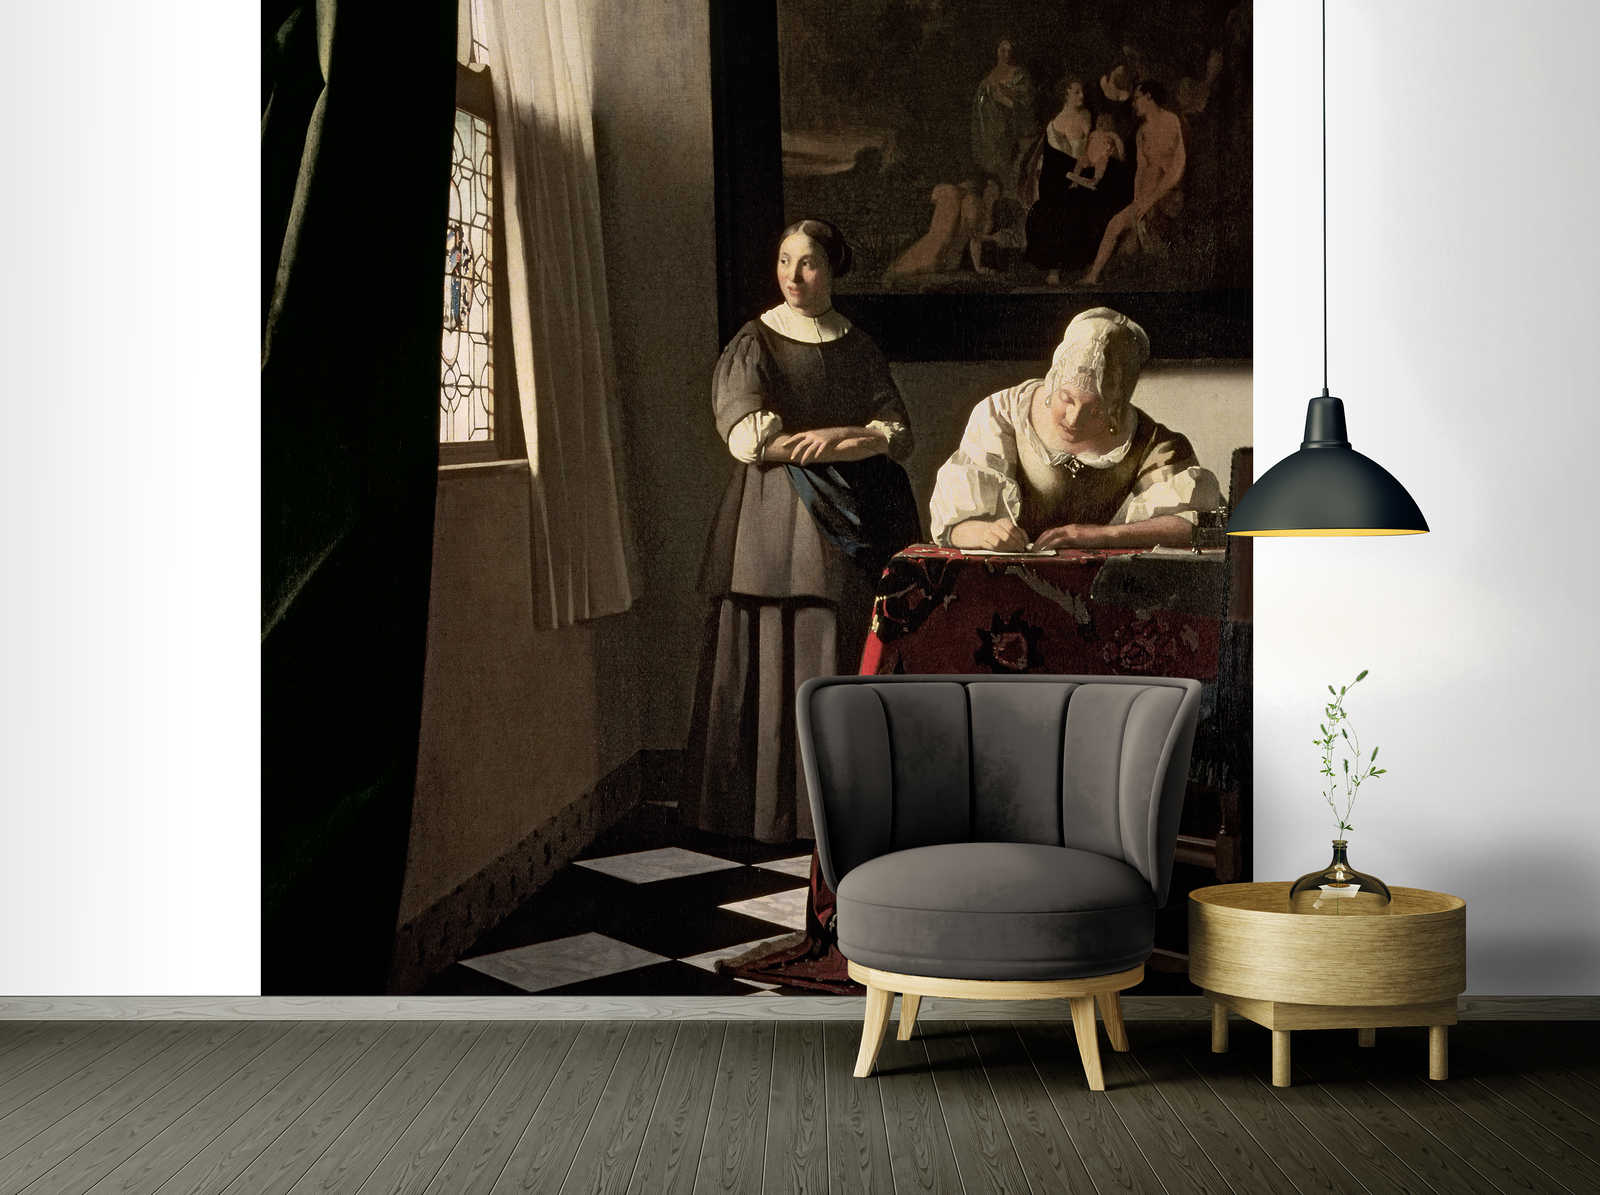             Muurschildering "Dame schrijft brief met dienstmeid" van Jan Vermeer
        